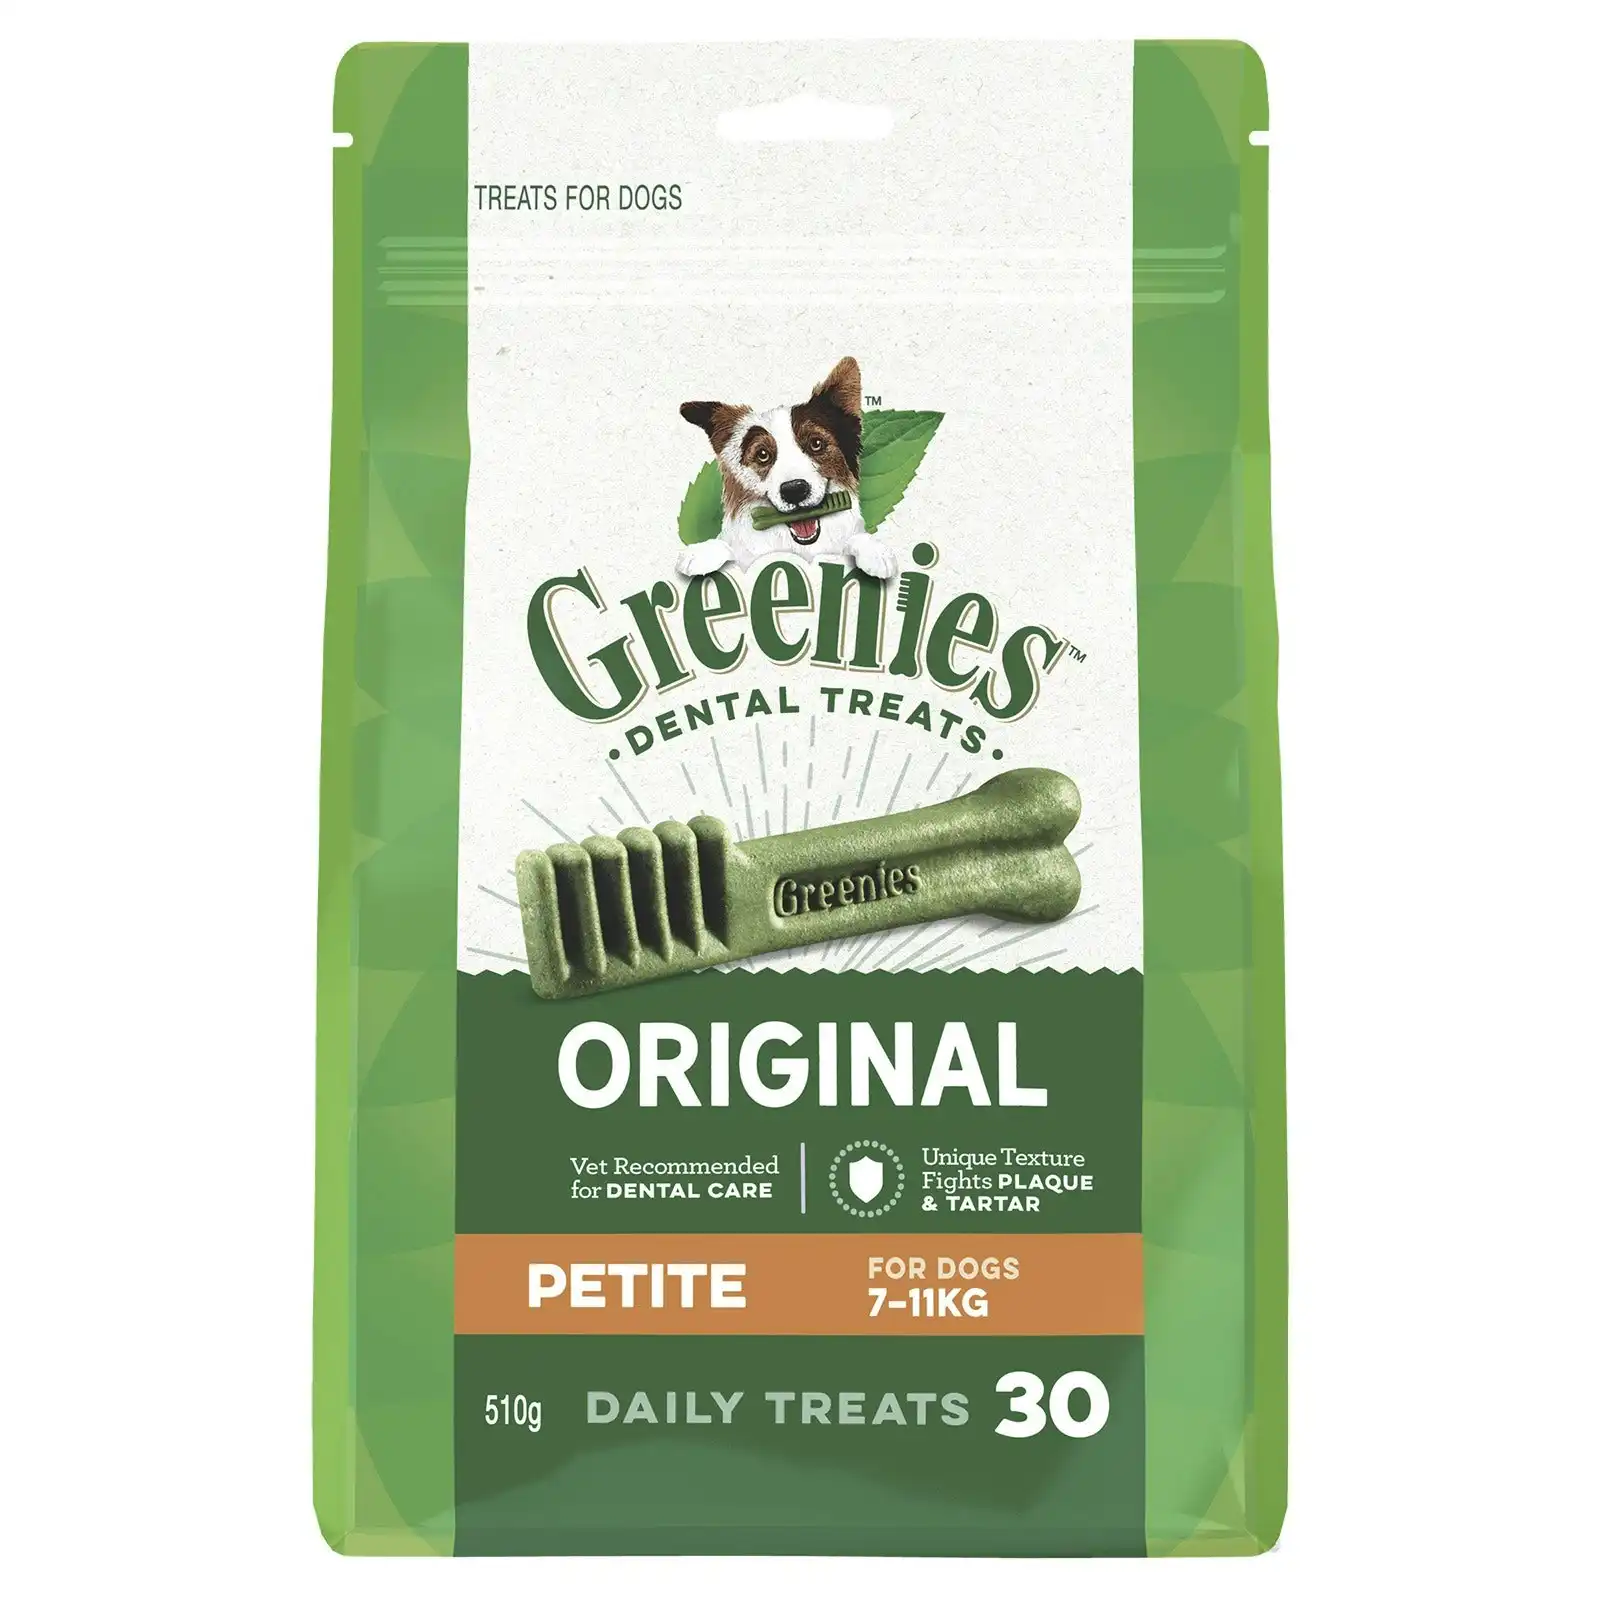 Greenies Dental Treats Original Petite For Dogs Mega Pack